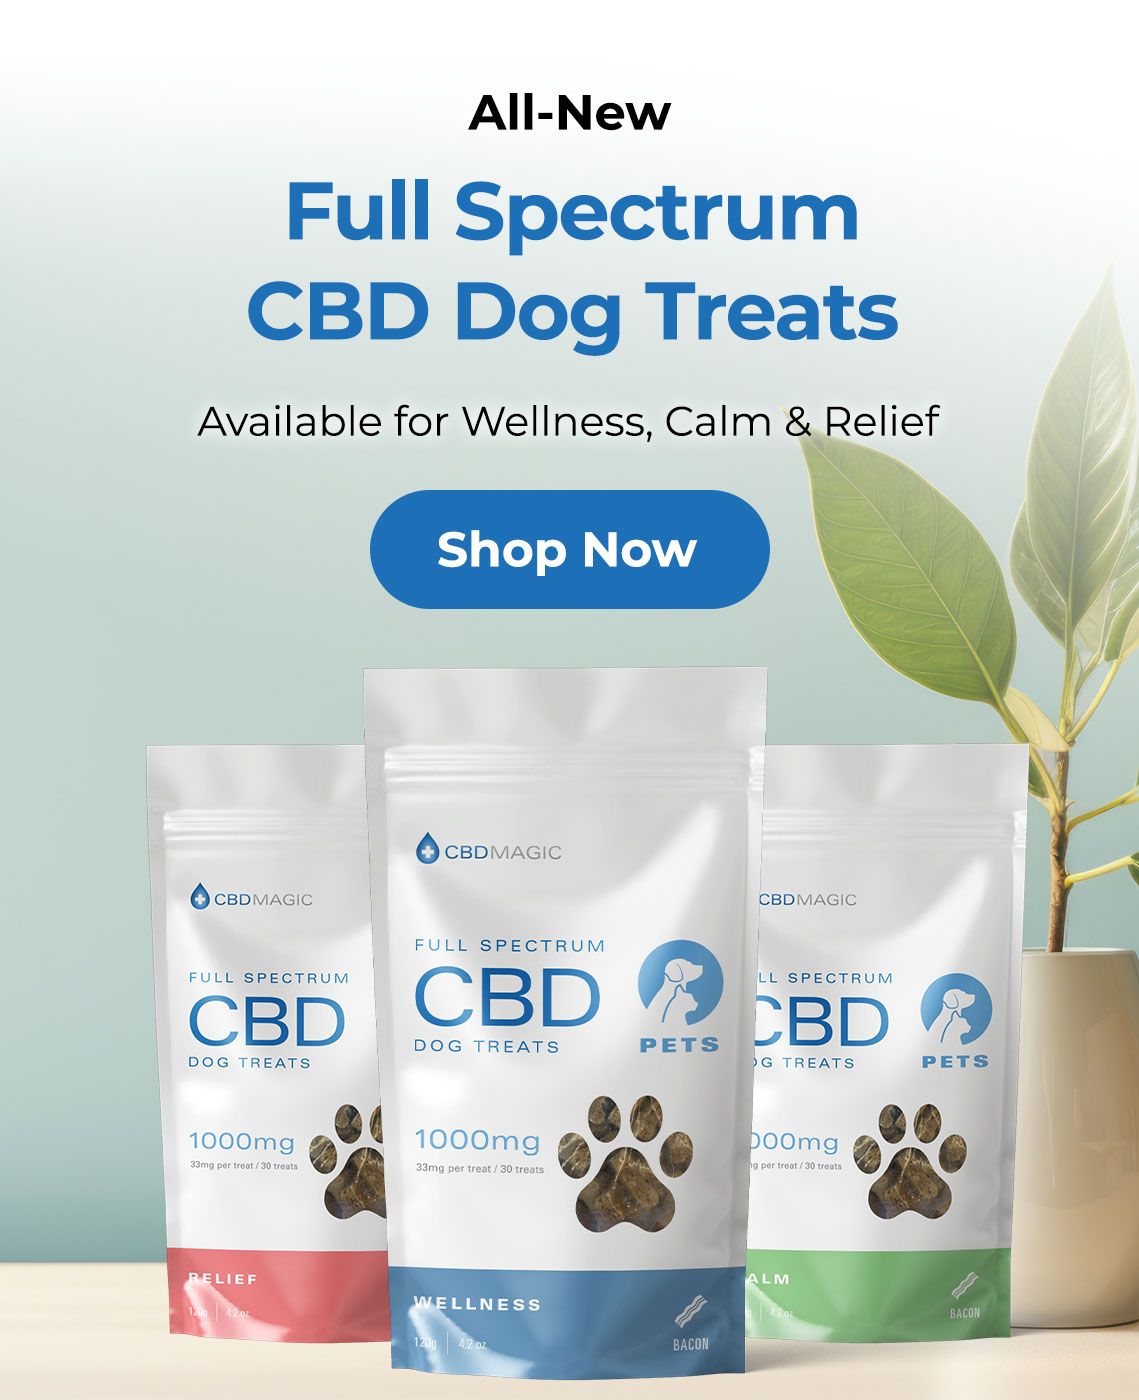 All-New CBD Dog Treats